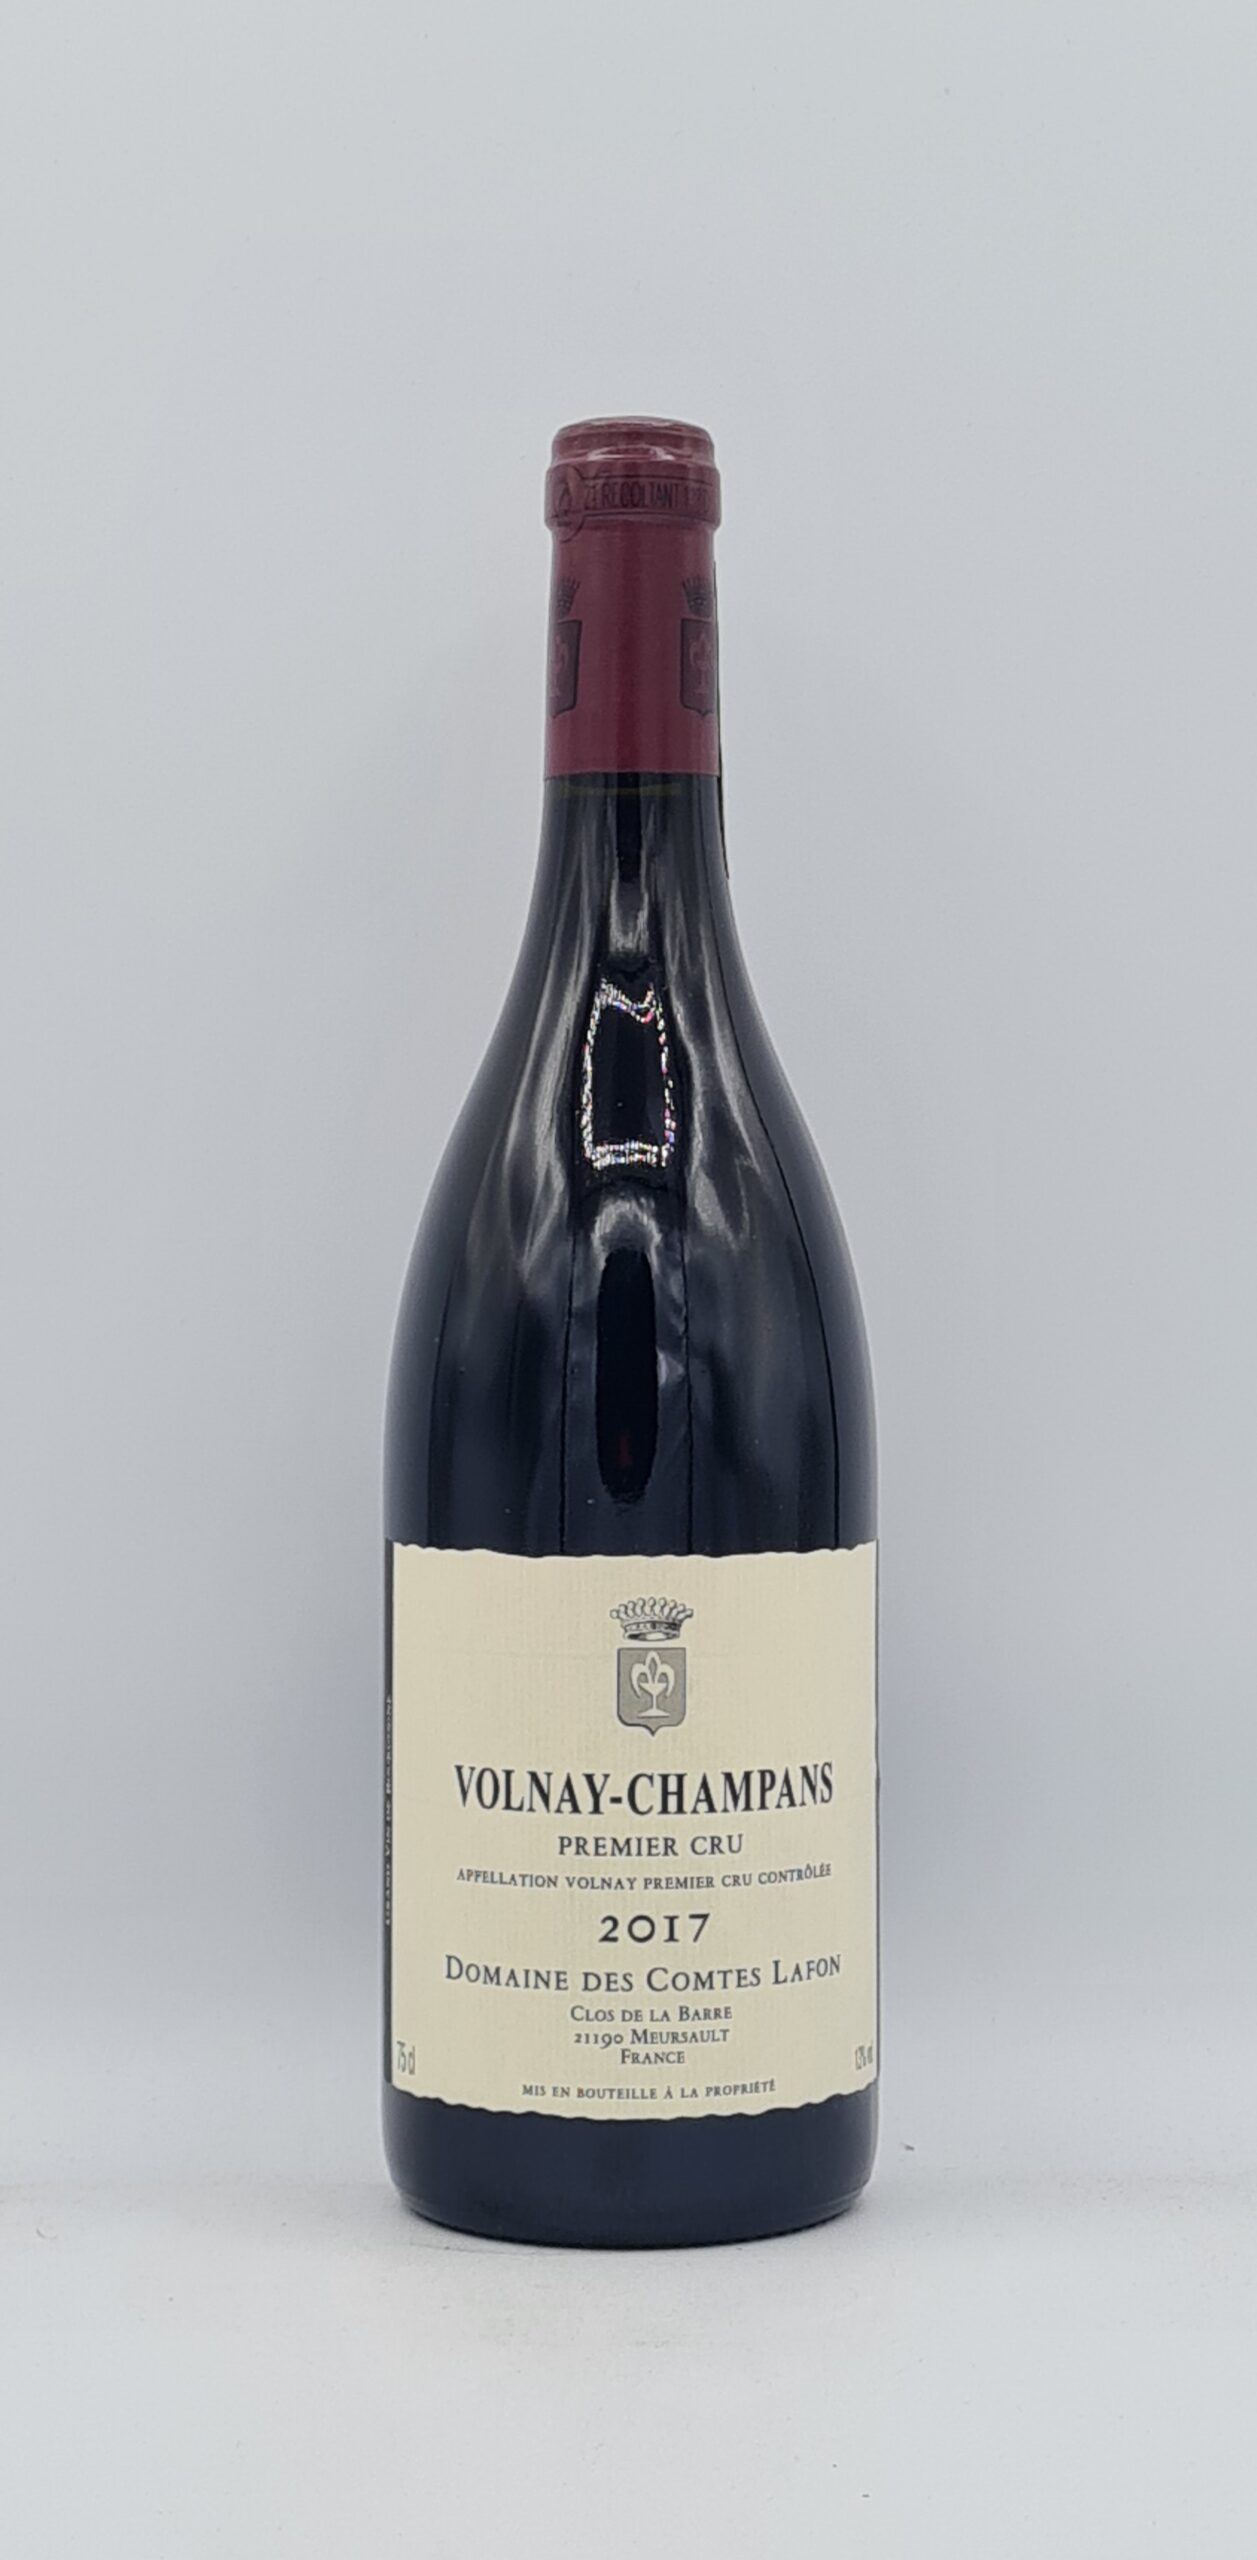 Bourgogne Volnay 1er cru “Champans” 2017 Domaine des Comte Lafon